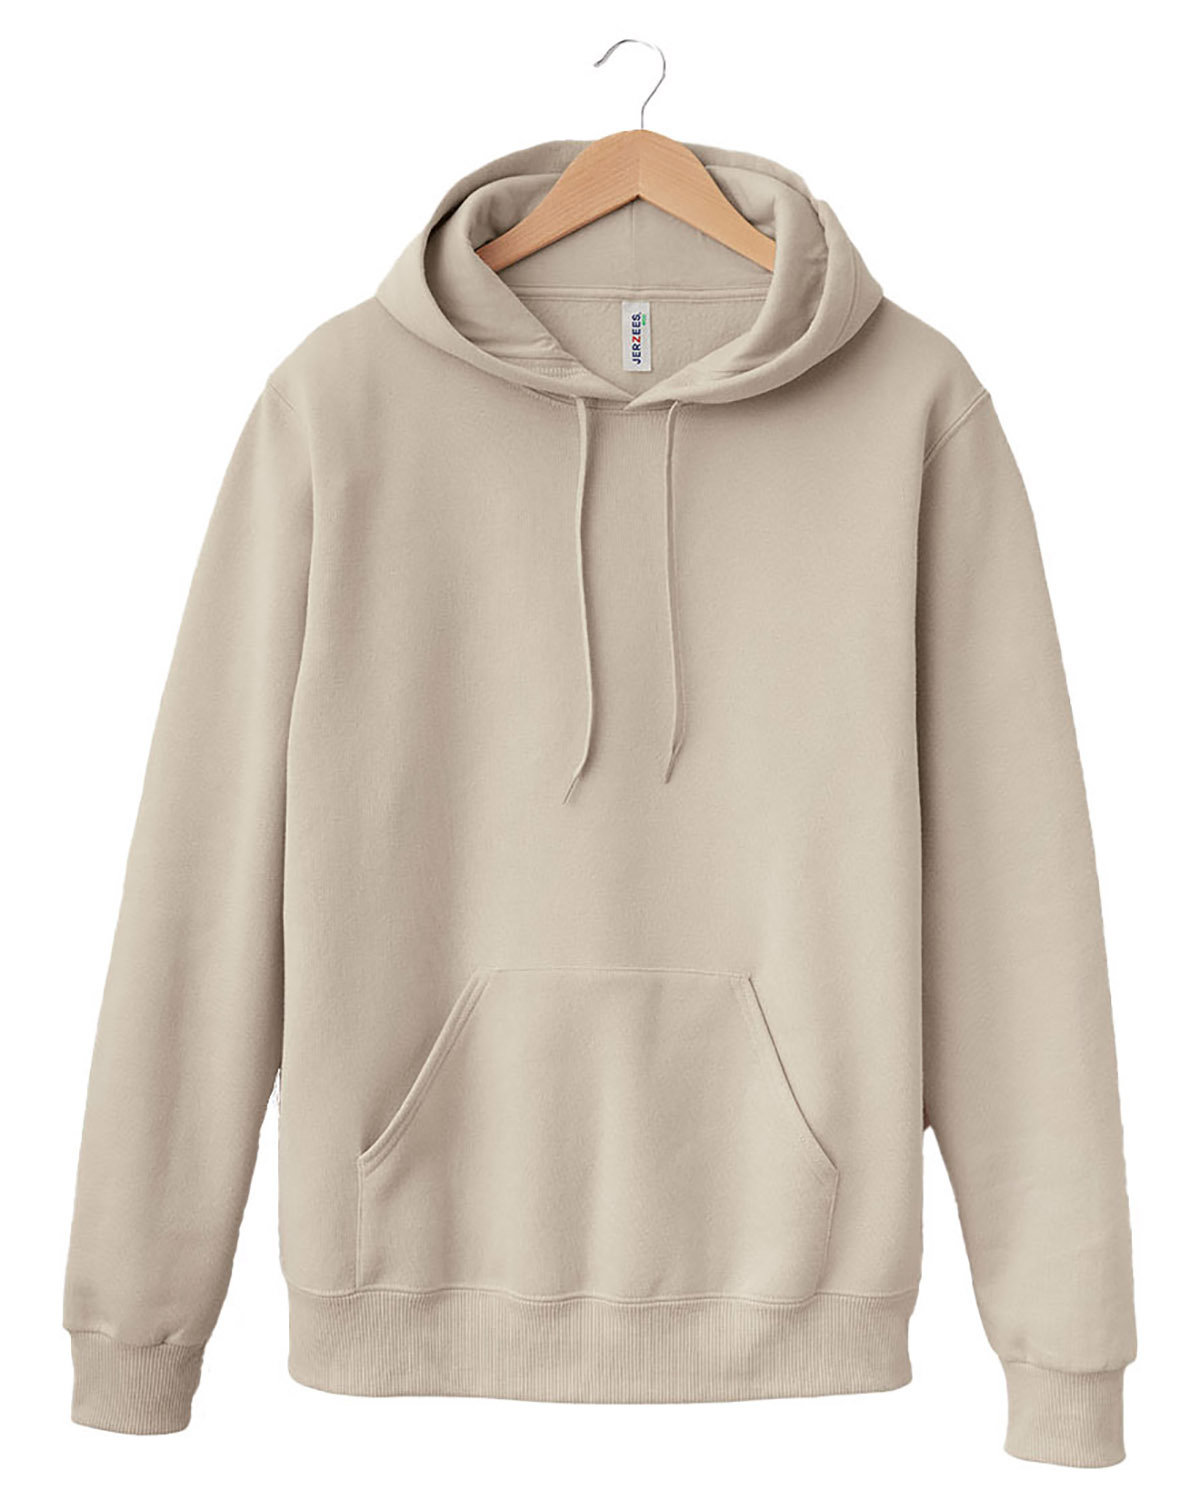 Jerzees 700MR - Unisex Eco™ Premium Blend Fleece Pullover Hooded Sweatshirt